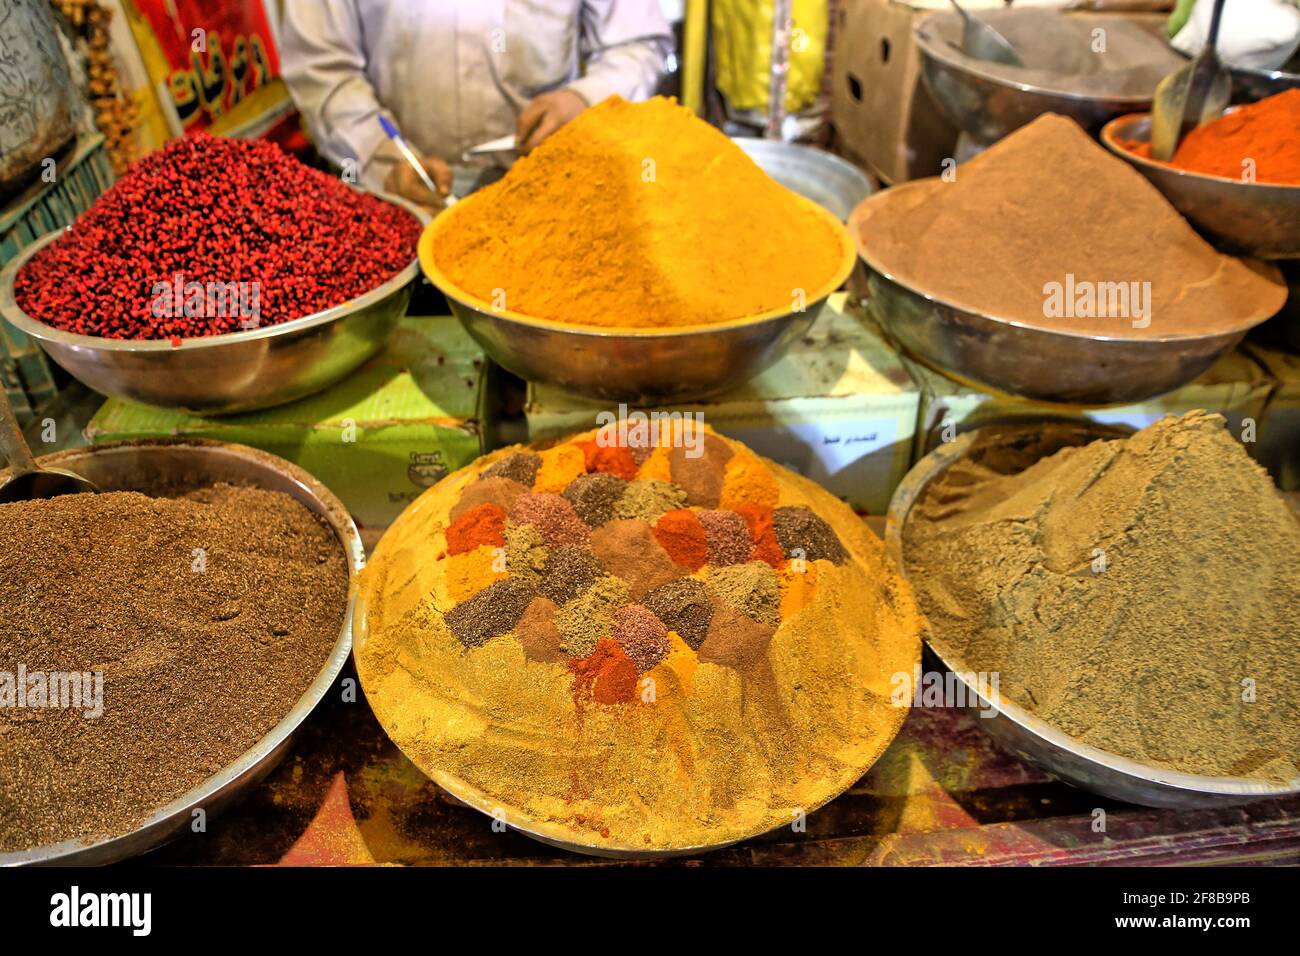 Gewürze und Trockenfrüchte auf einem orientalischen Basar Banque D'Images